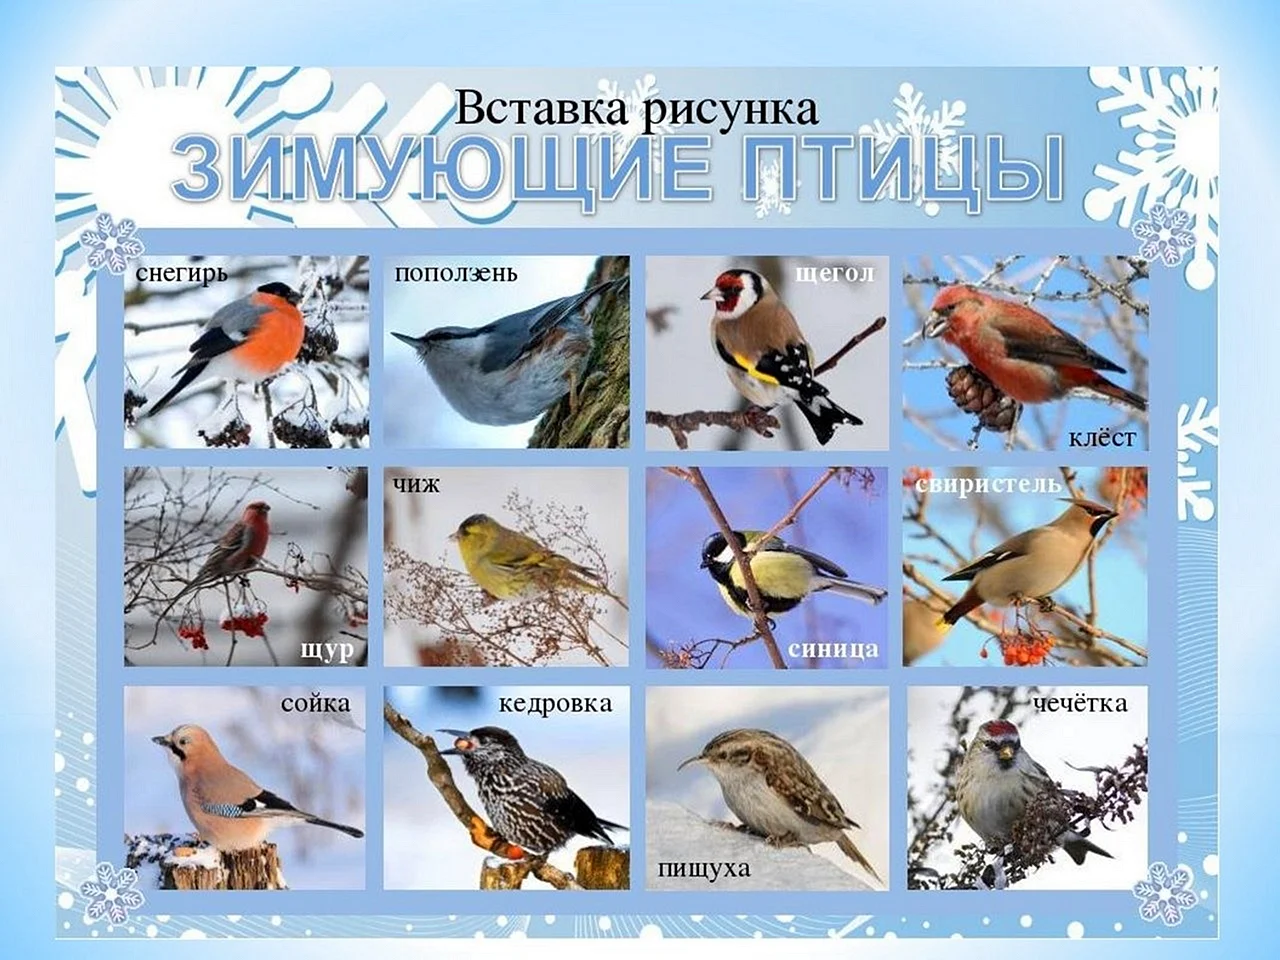 Птицы зимующие в России в средней полосе России